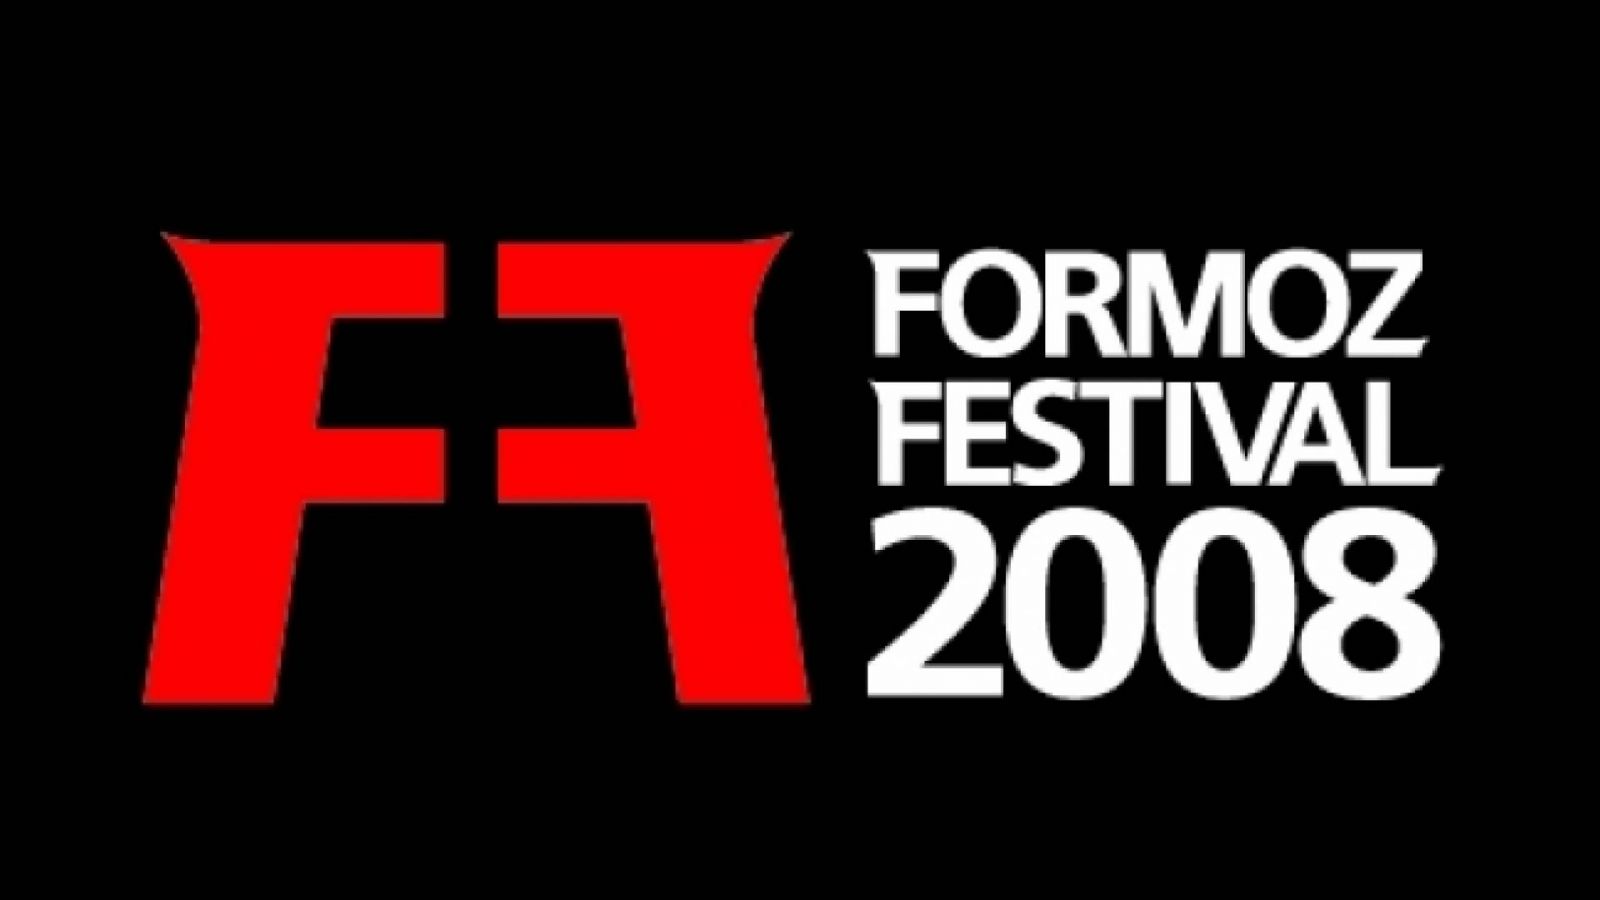 FORMOZ Festival - Część 2 © Formoz Festival